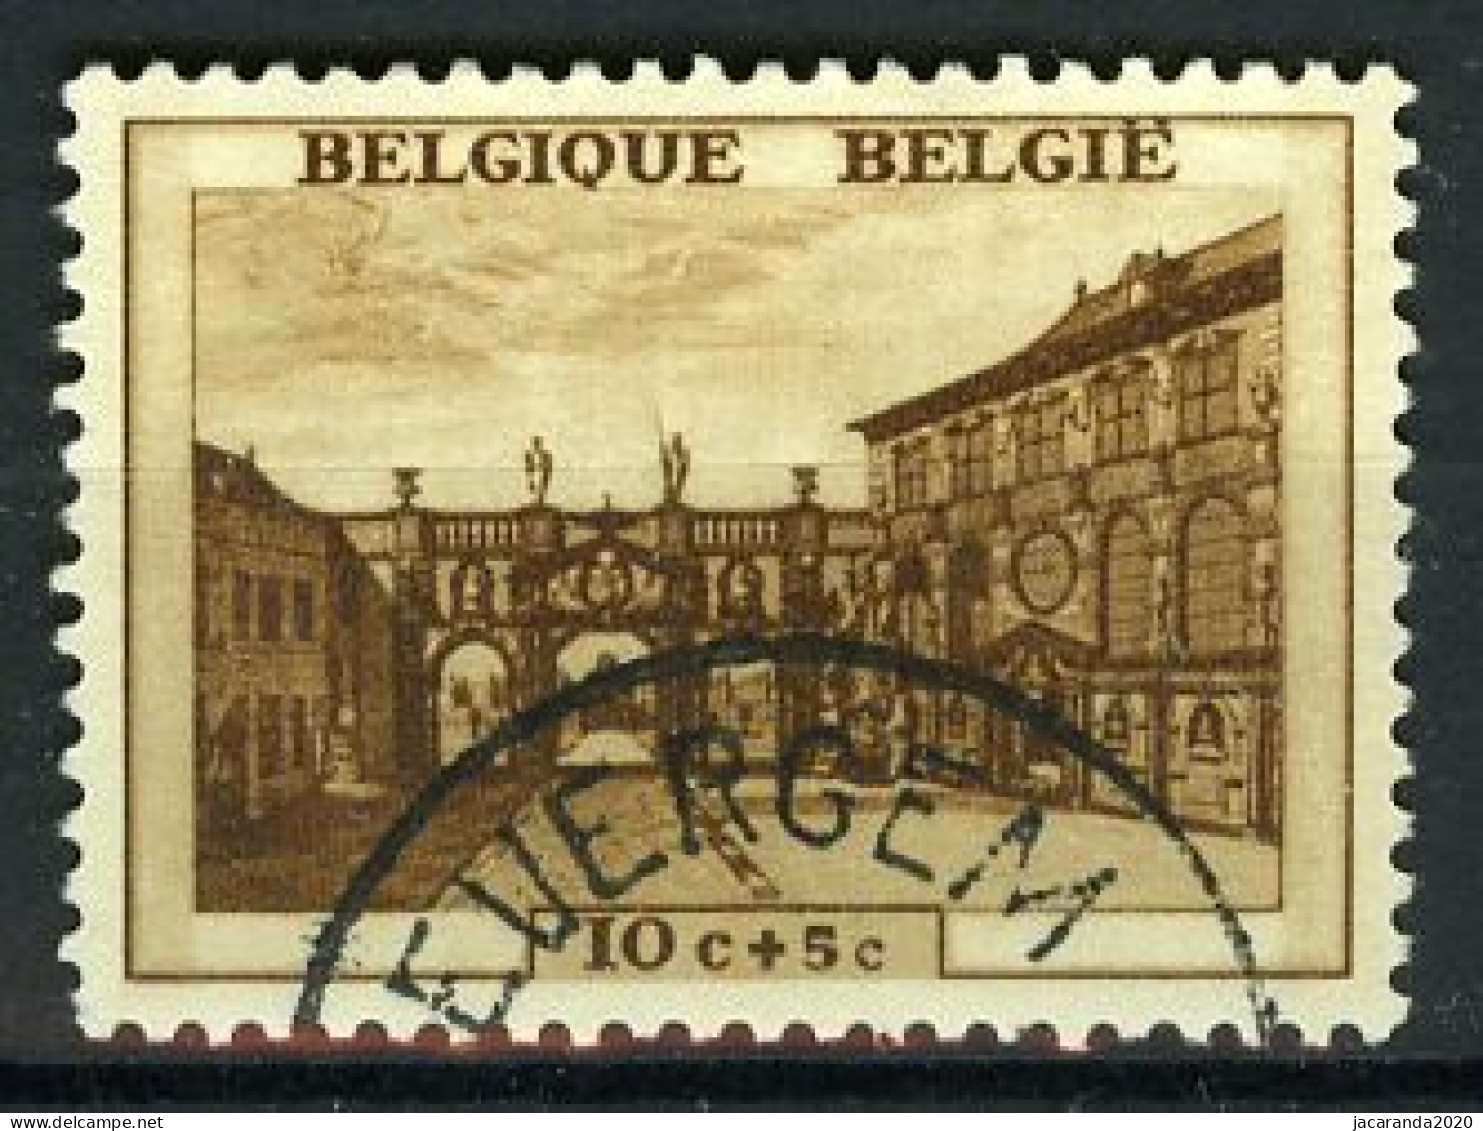 België 504 - Rubenshuis - Antwerpen - Maison De P. P. Rubens - Gestempeld - Oblitéré - Used - Used Stamps